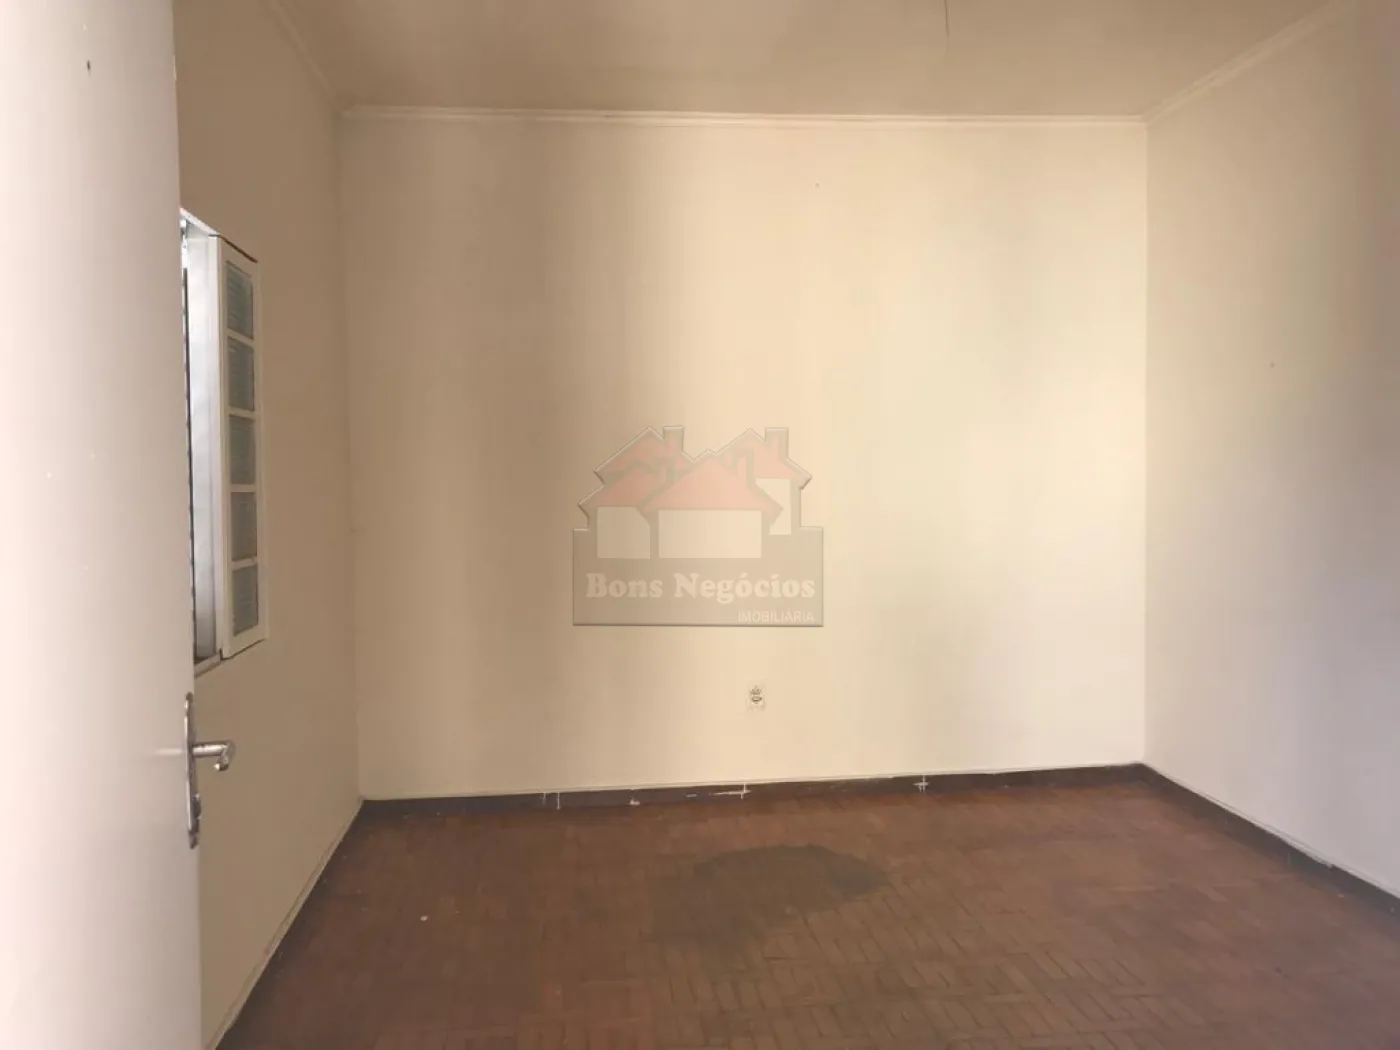 Comprar Casa / Padrão em Ribeirão Preto R$ 280.000,00 - Foto 1